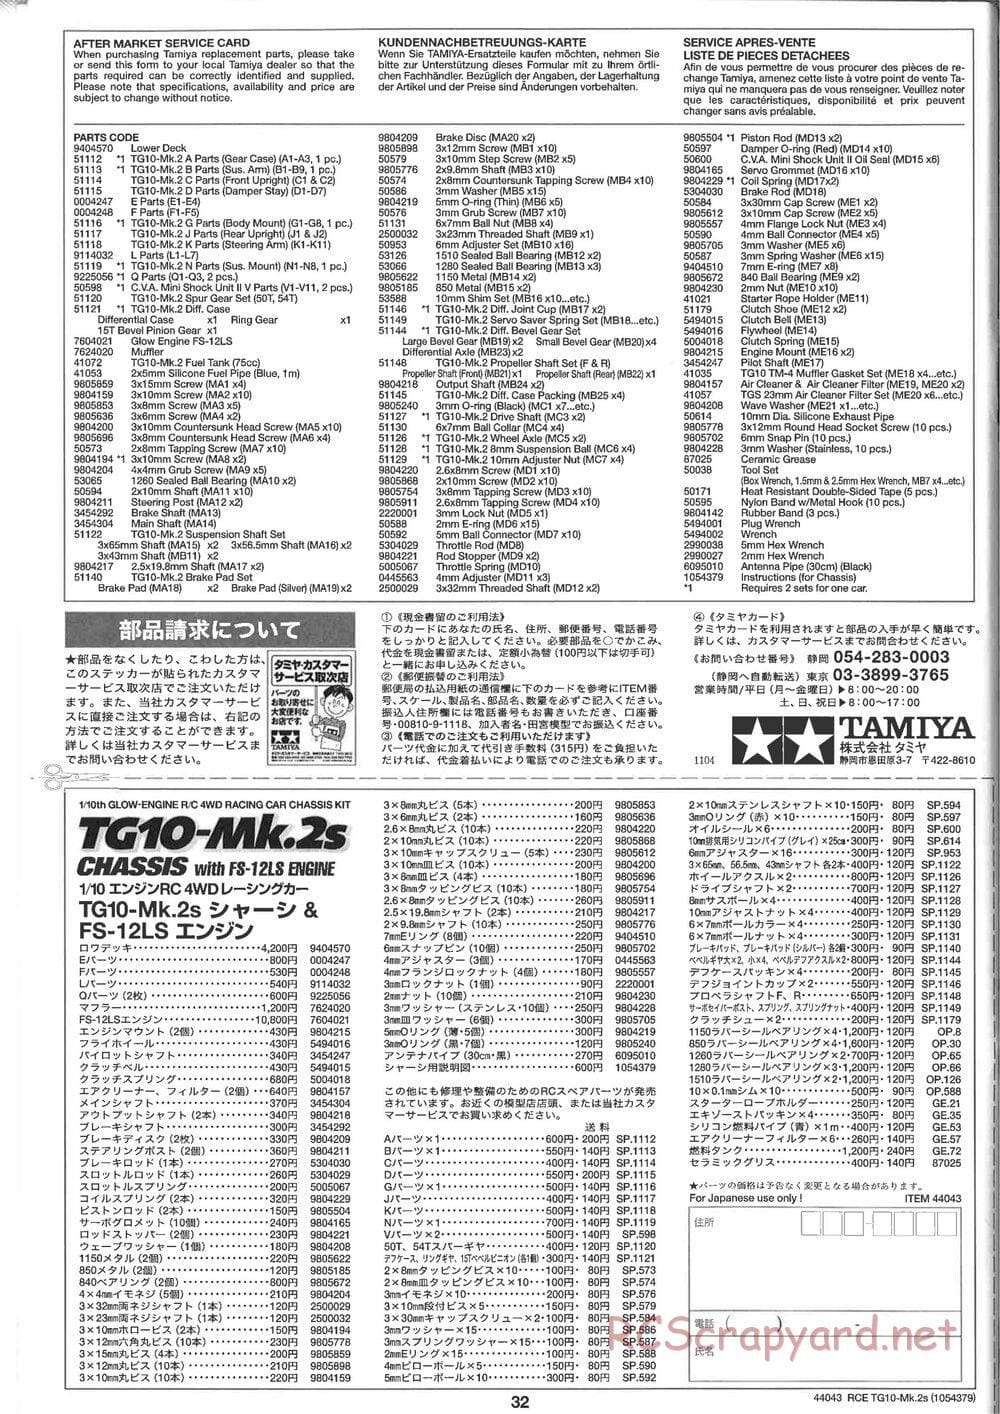 Tamiya - TG10 Mk.2s Chassis - Manual - Page 33